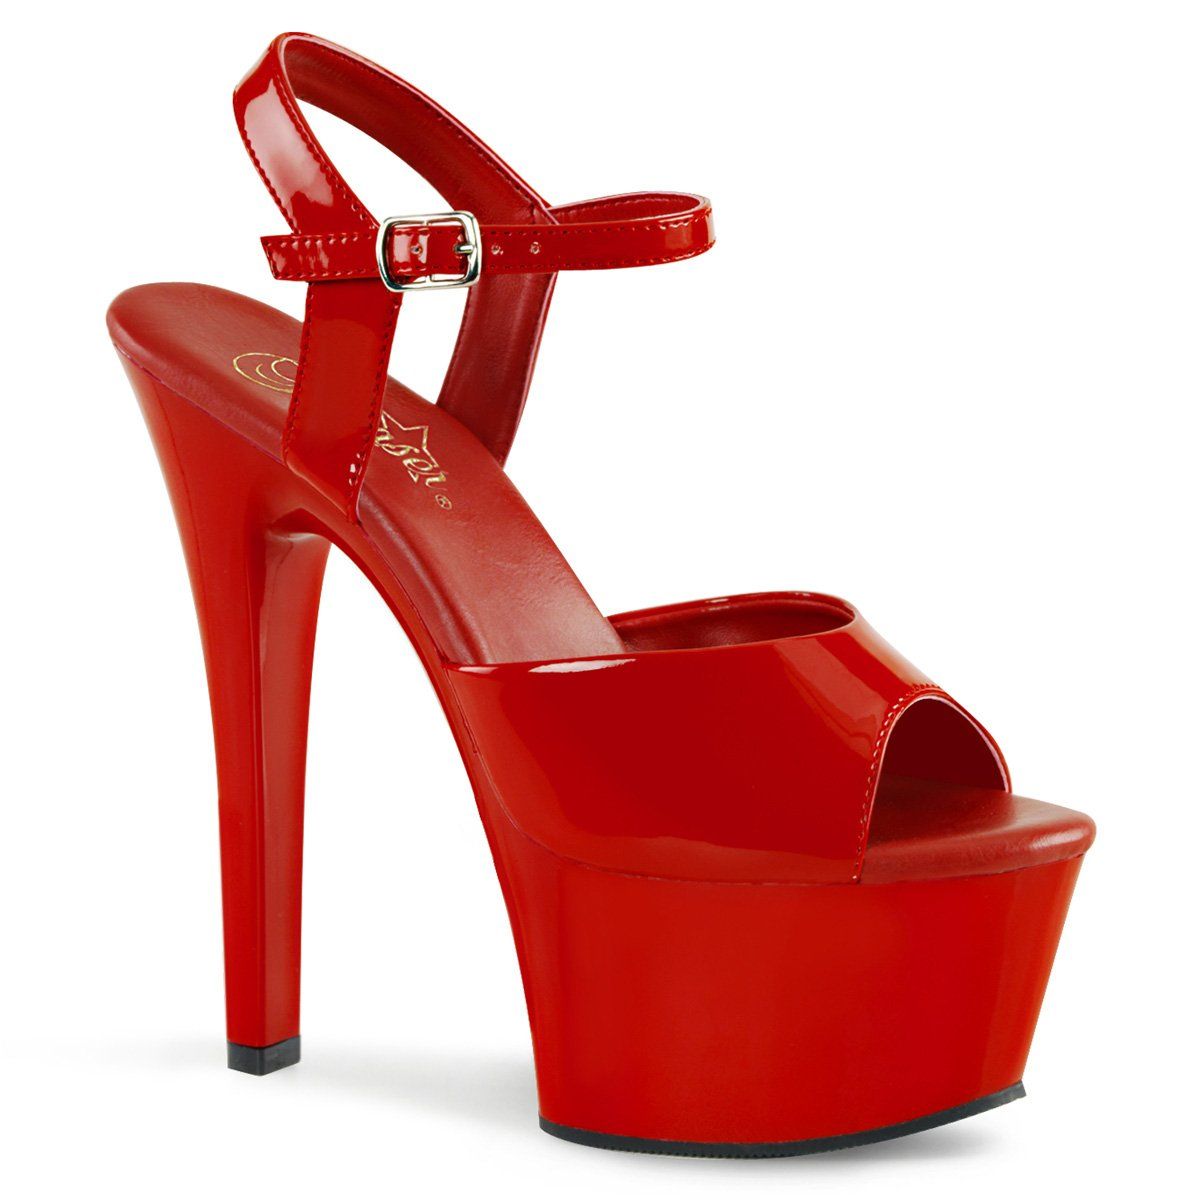 ASPIRE-609 Red Patent Platform Sandal Pleaser